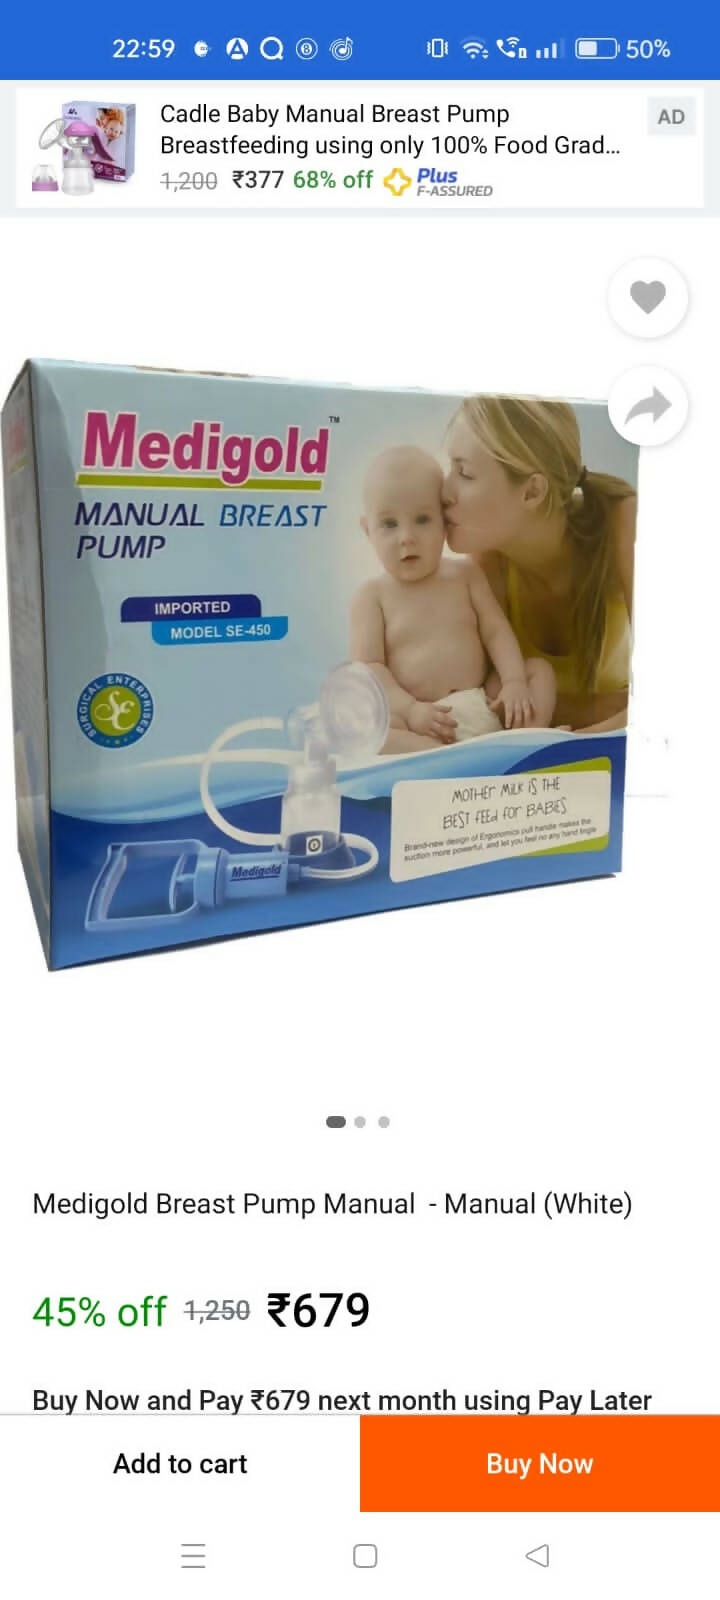 MEDIGOLD Manual Breast Pump - PyaraBaby